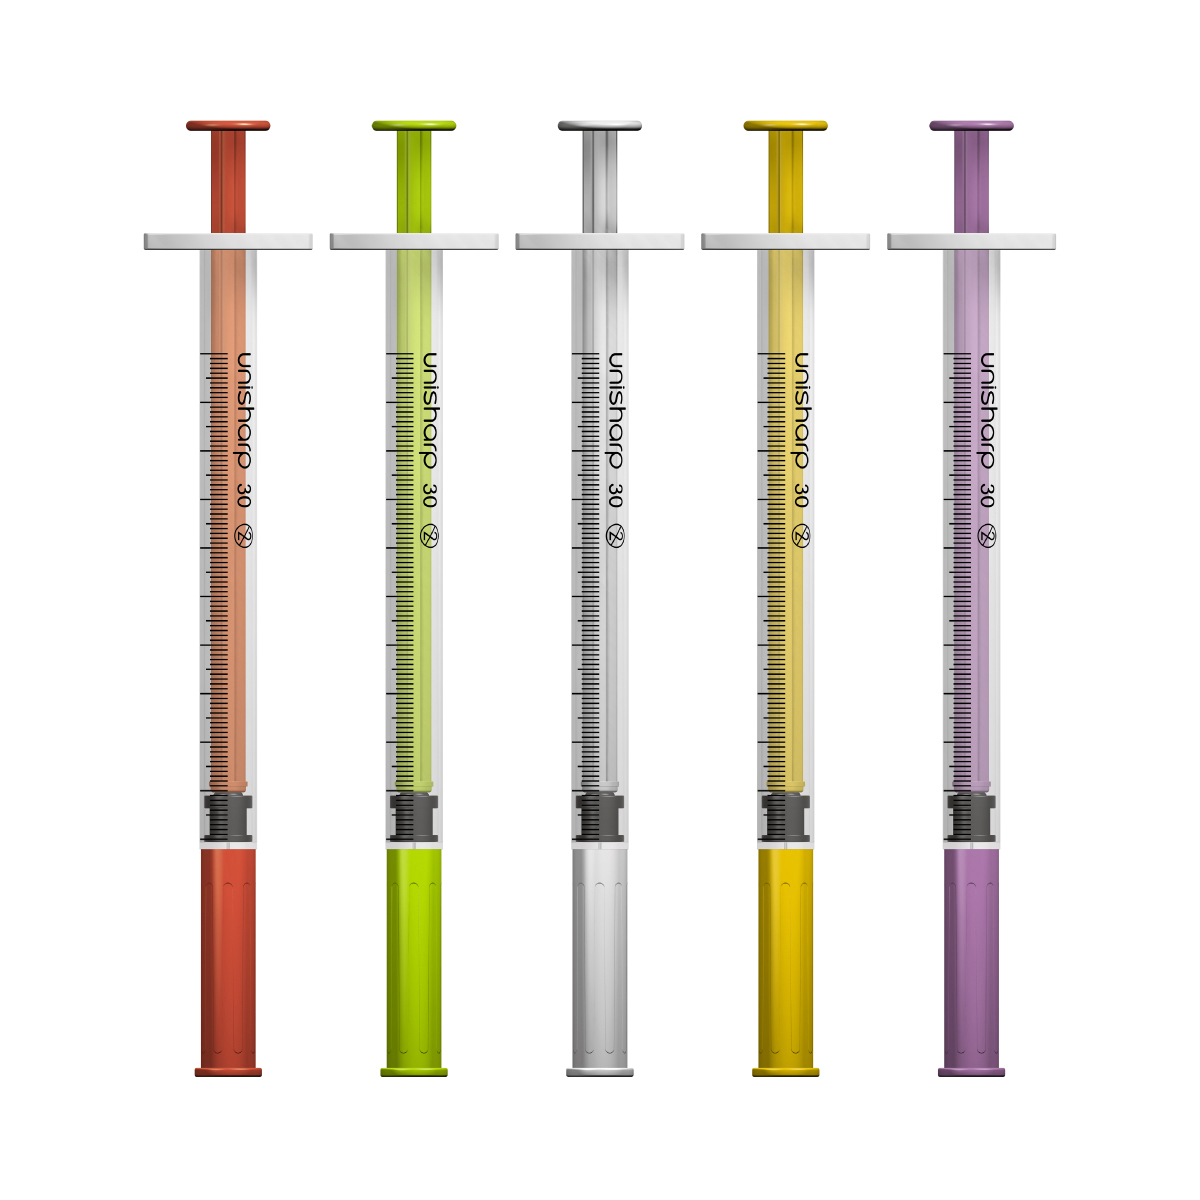 Unisharp 1ml 30G fixed needle syringe: mixed colours